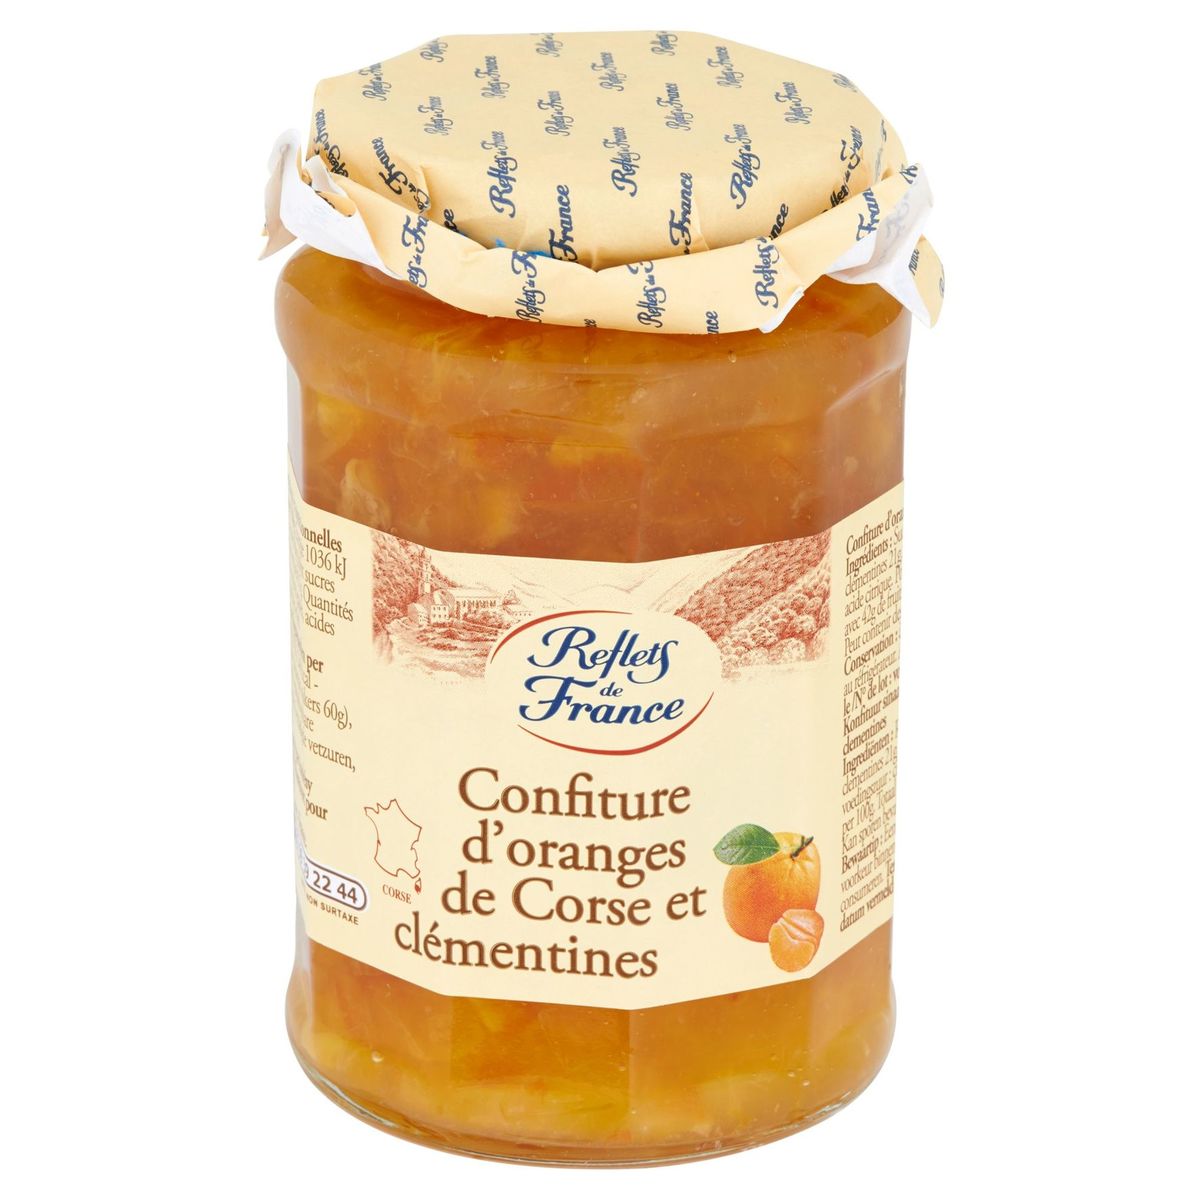 Reflets de France Confiture d'Oranges de Corse et Clémentines 325 g